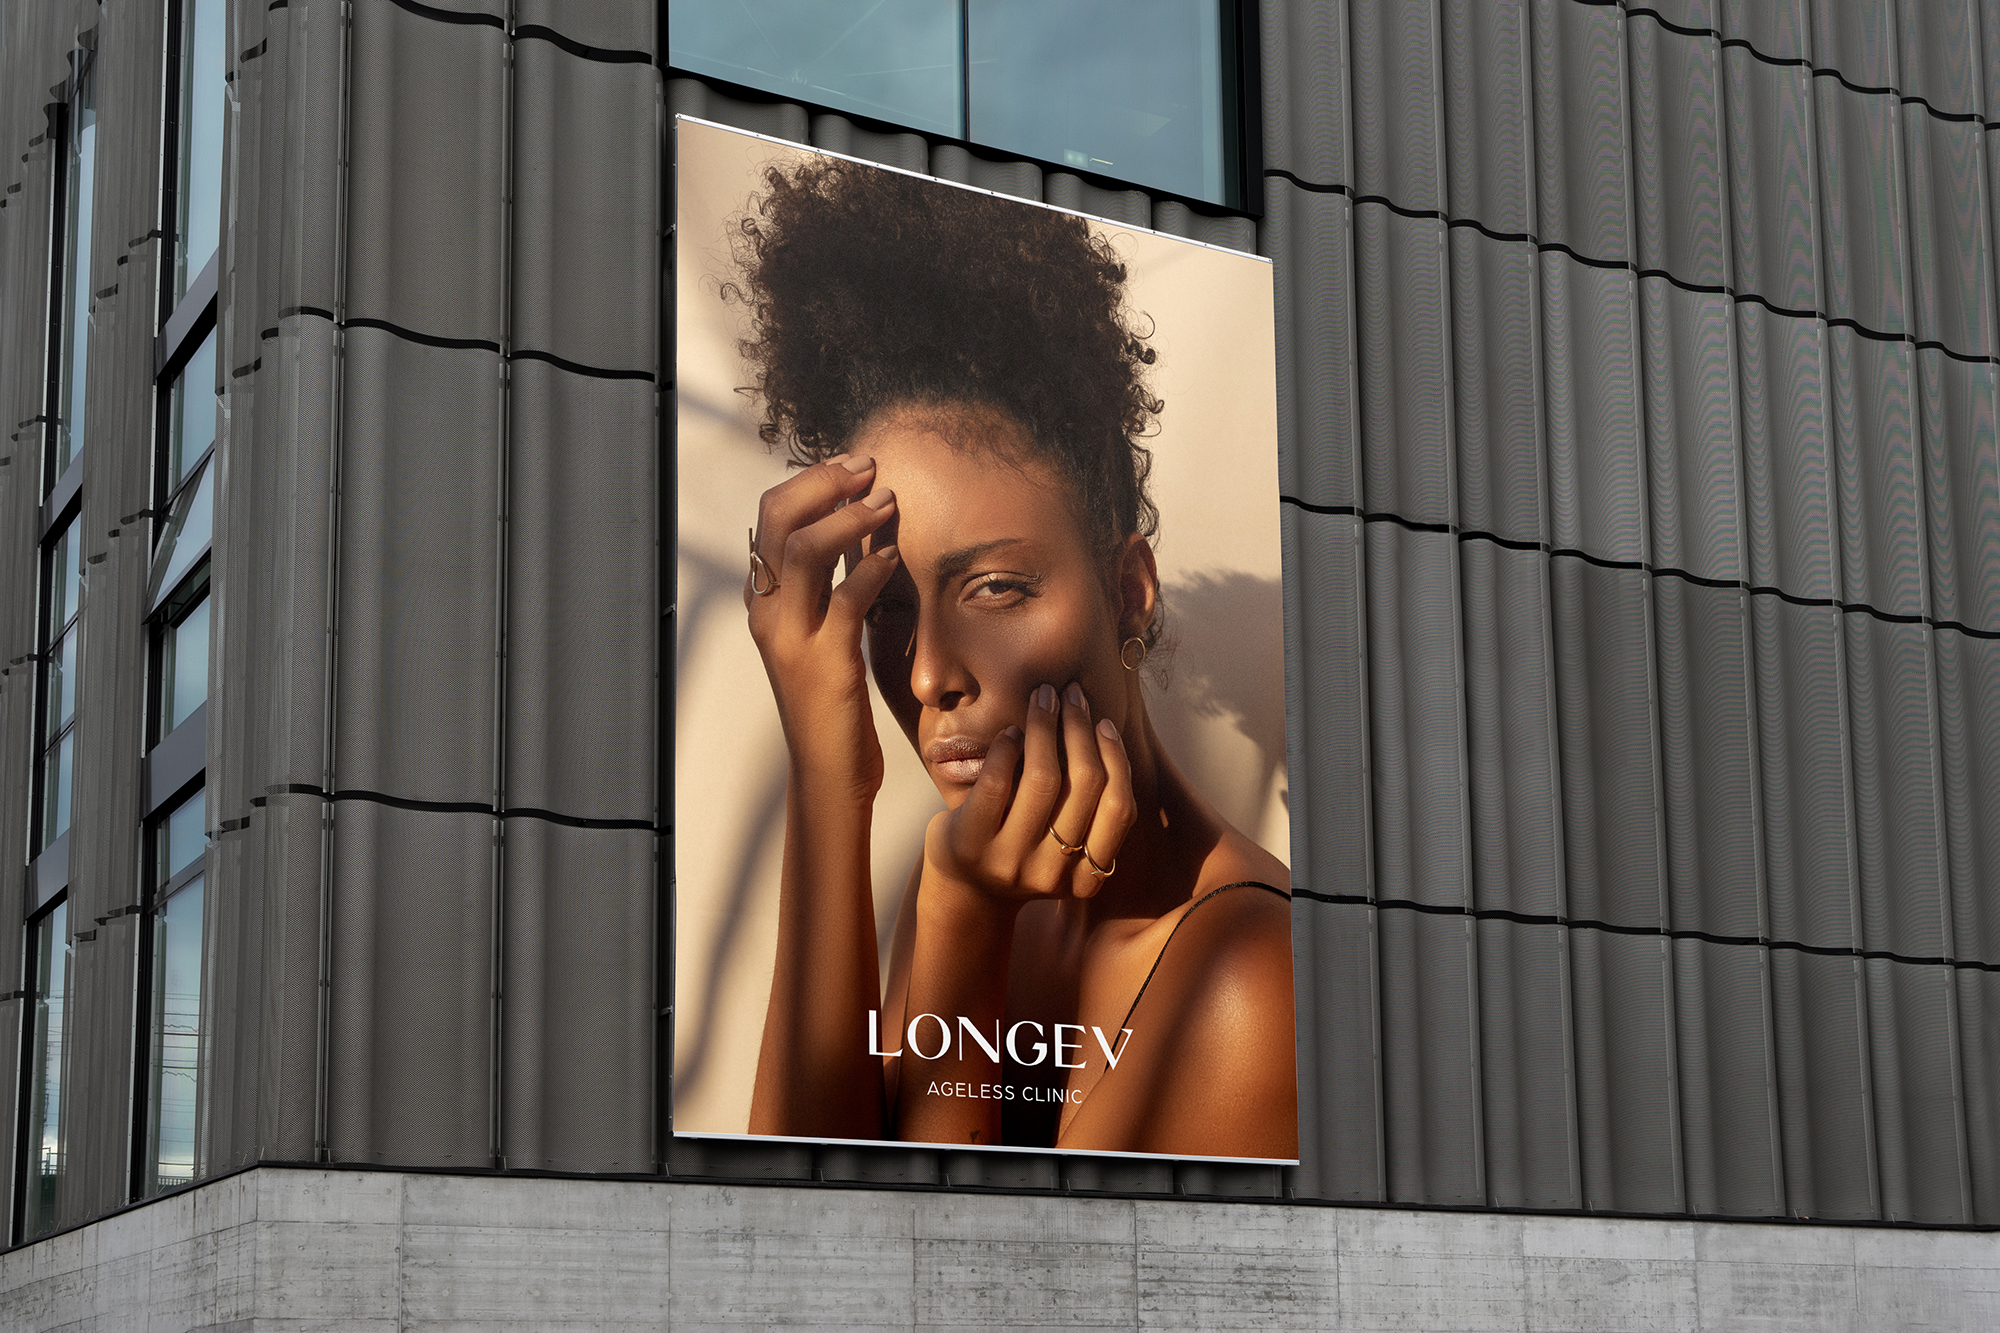 Longev billboard with a woman modeling her glowing skin.